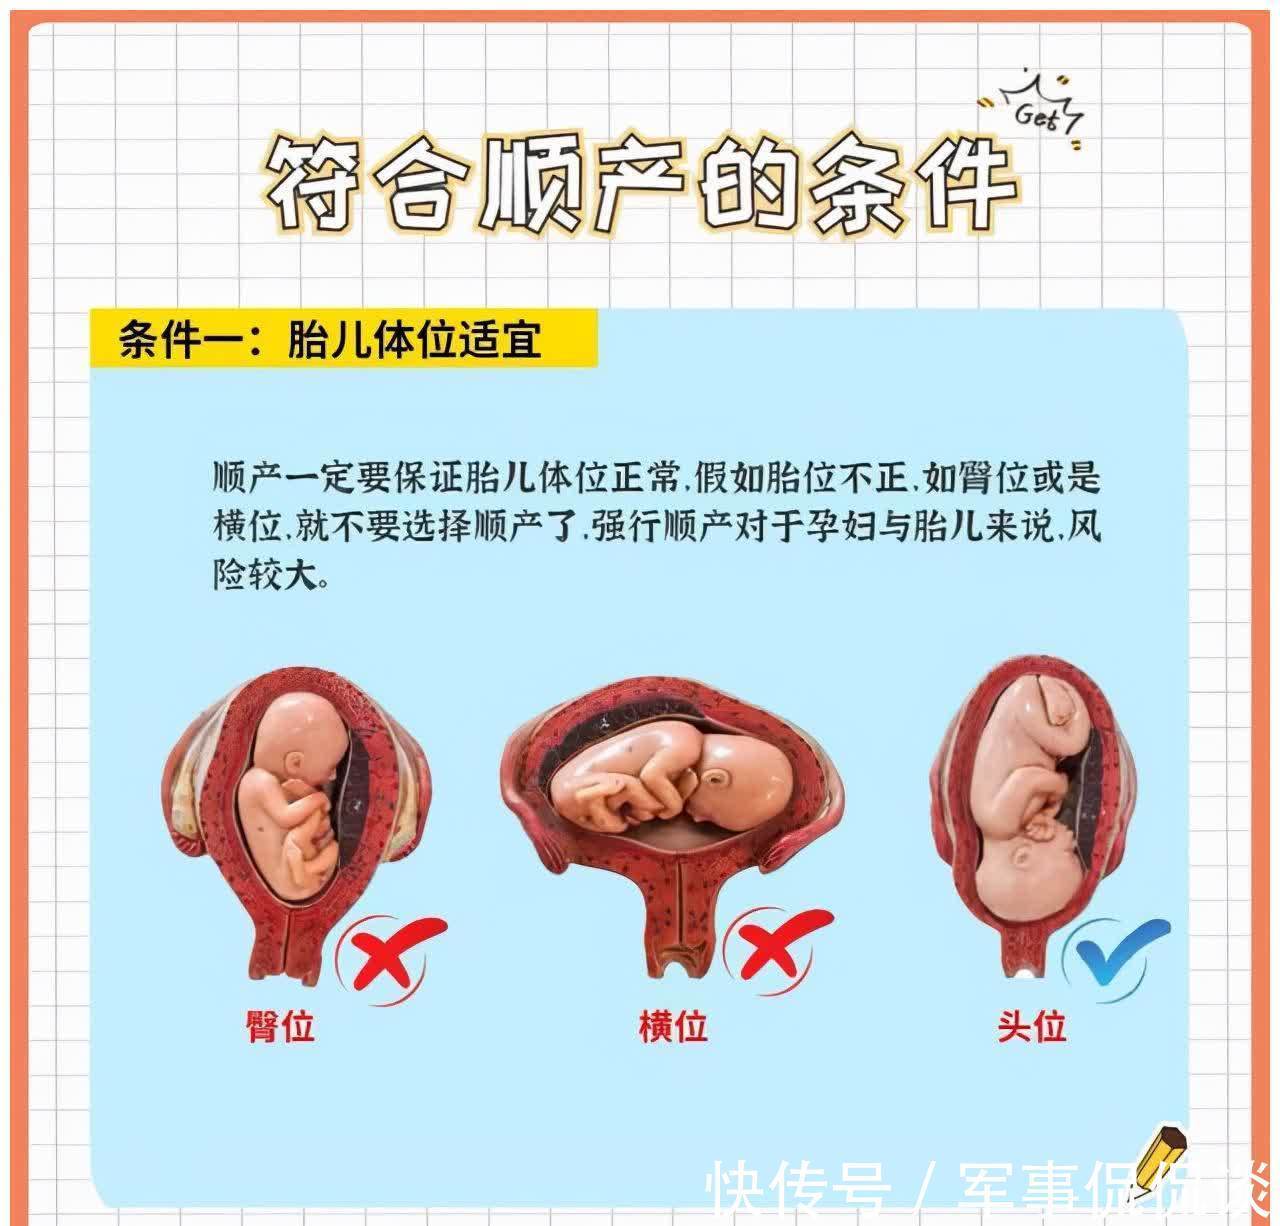 子宫|平安顺产的6个条件，满足就可以放宽心，想要顺产的妈妈提前看看